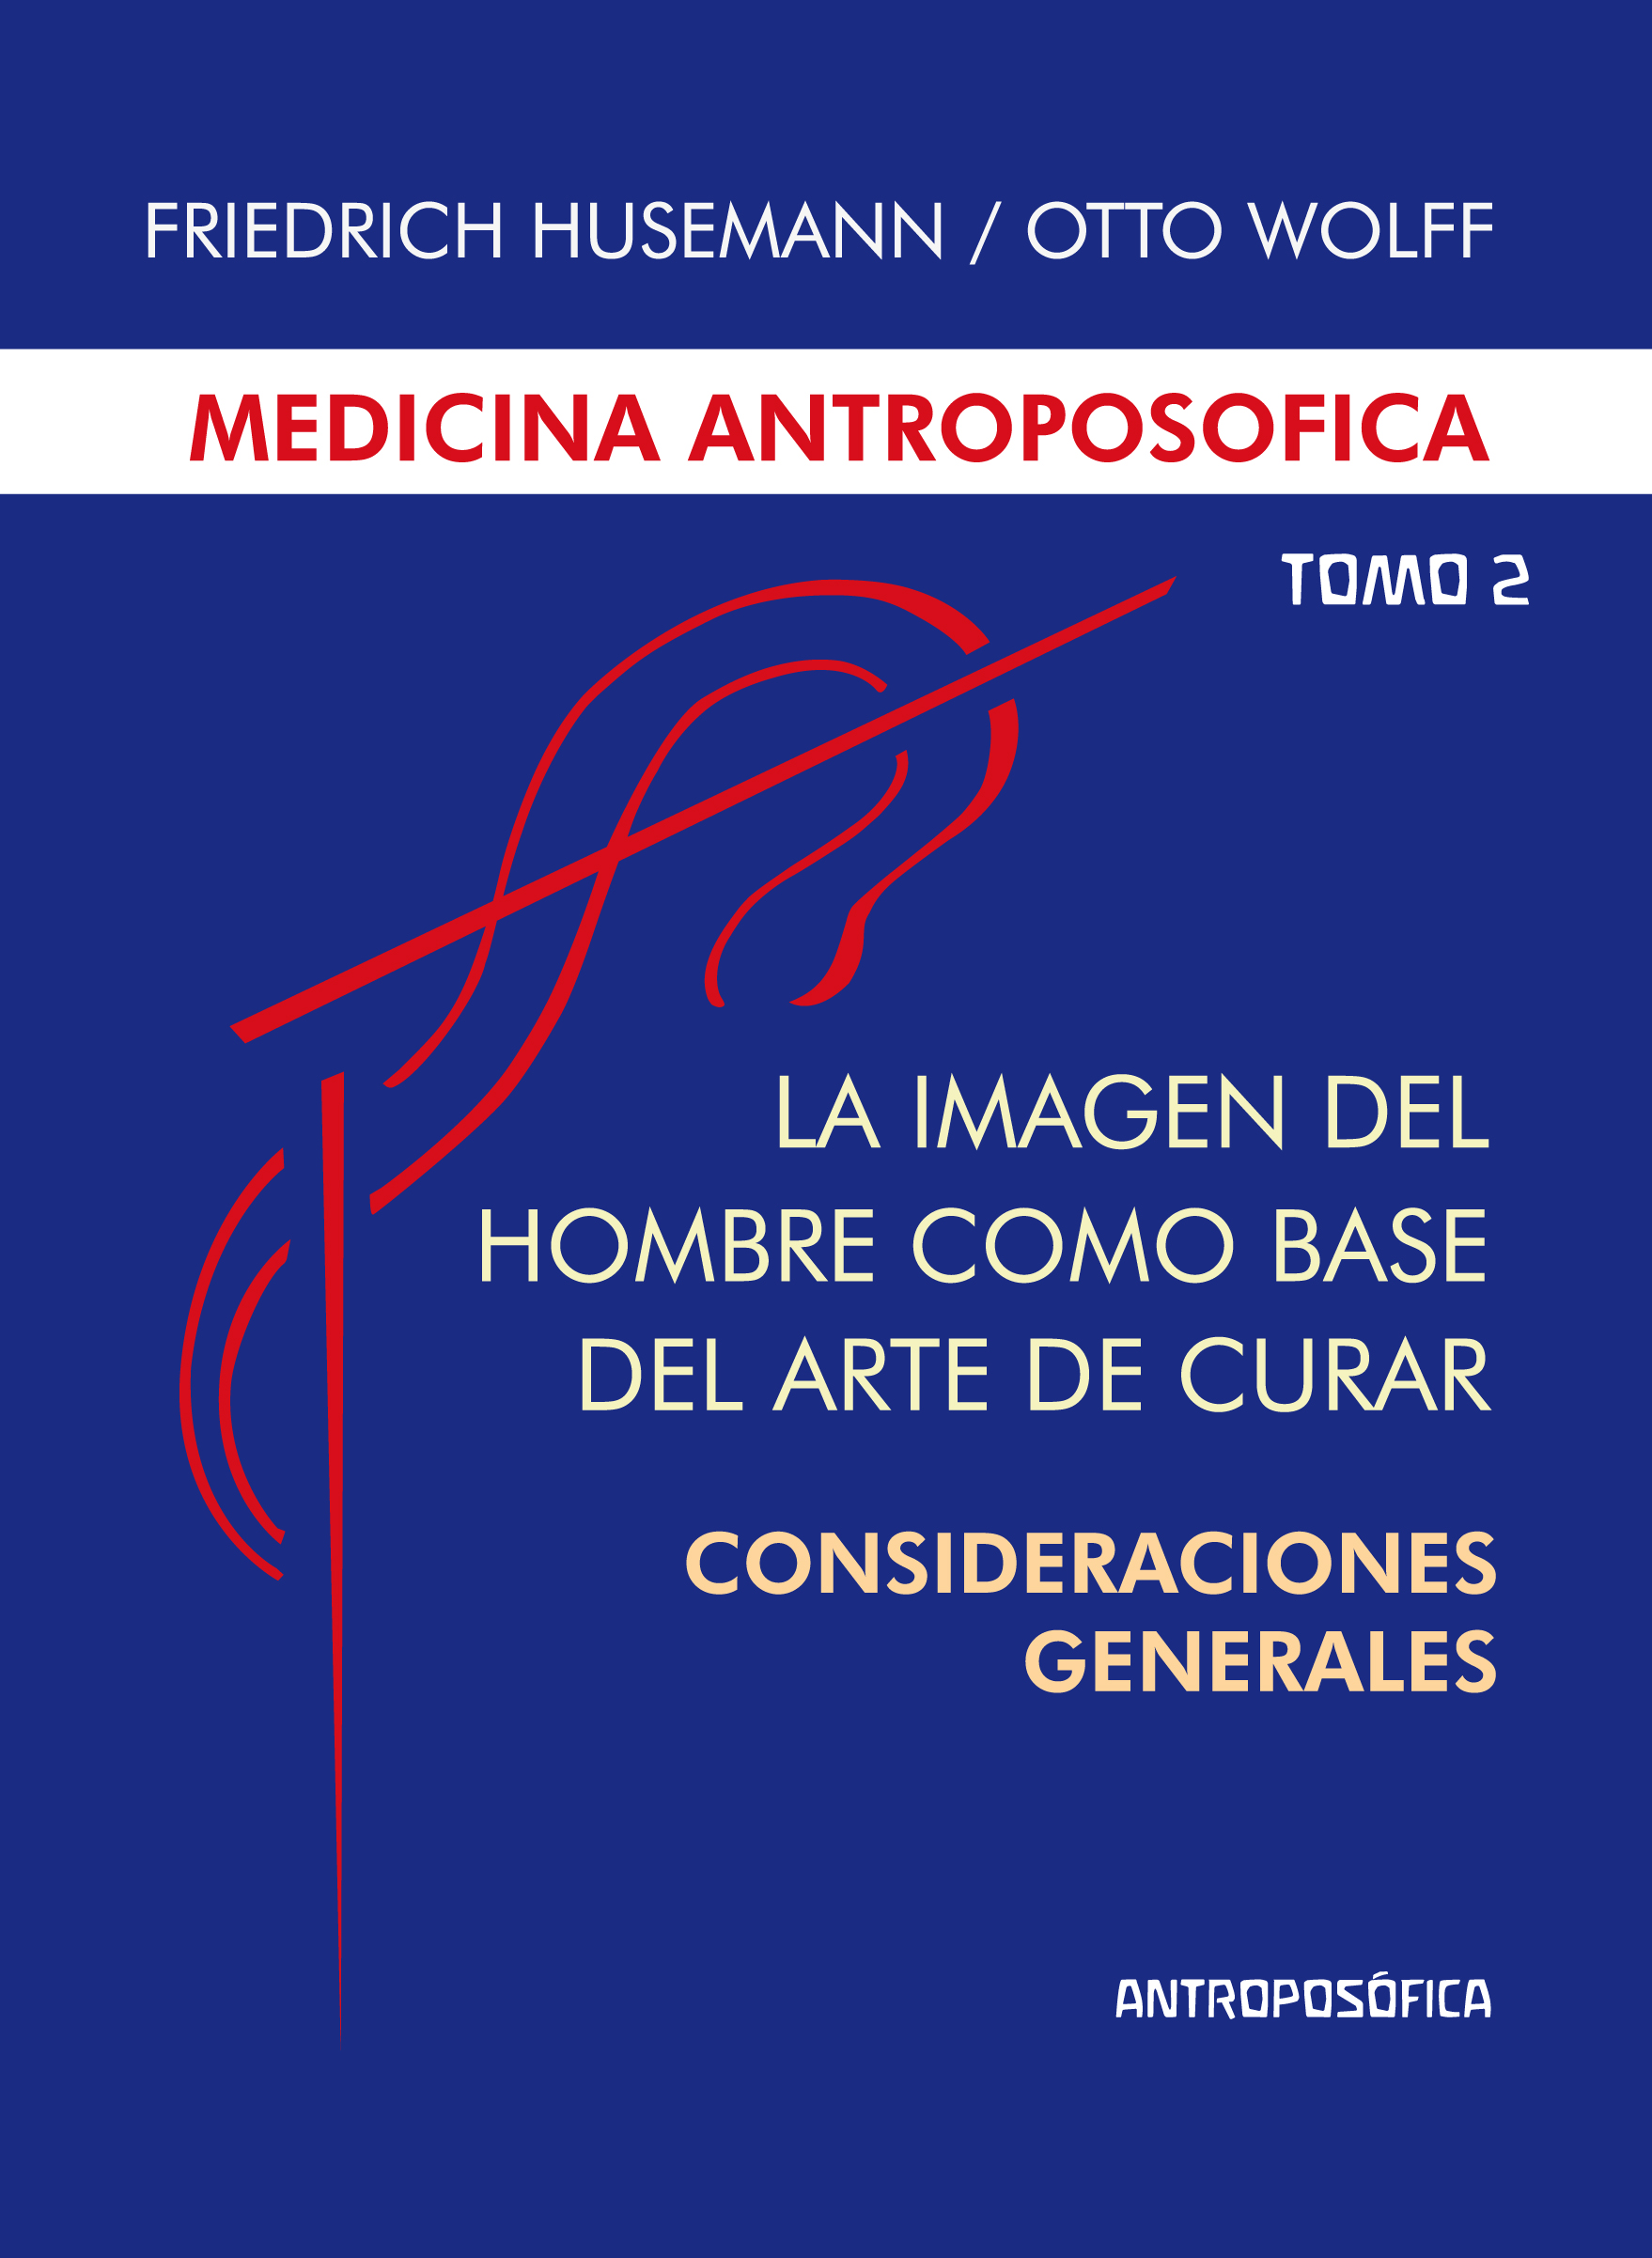 
            La medicina antroposófica, Tomo II - Imagen del hombre como base del arte de curar